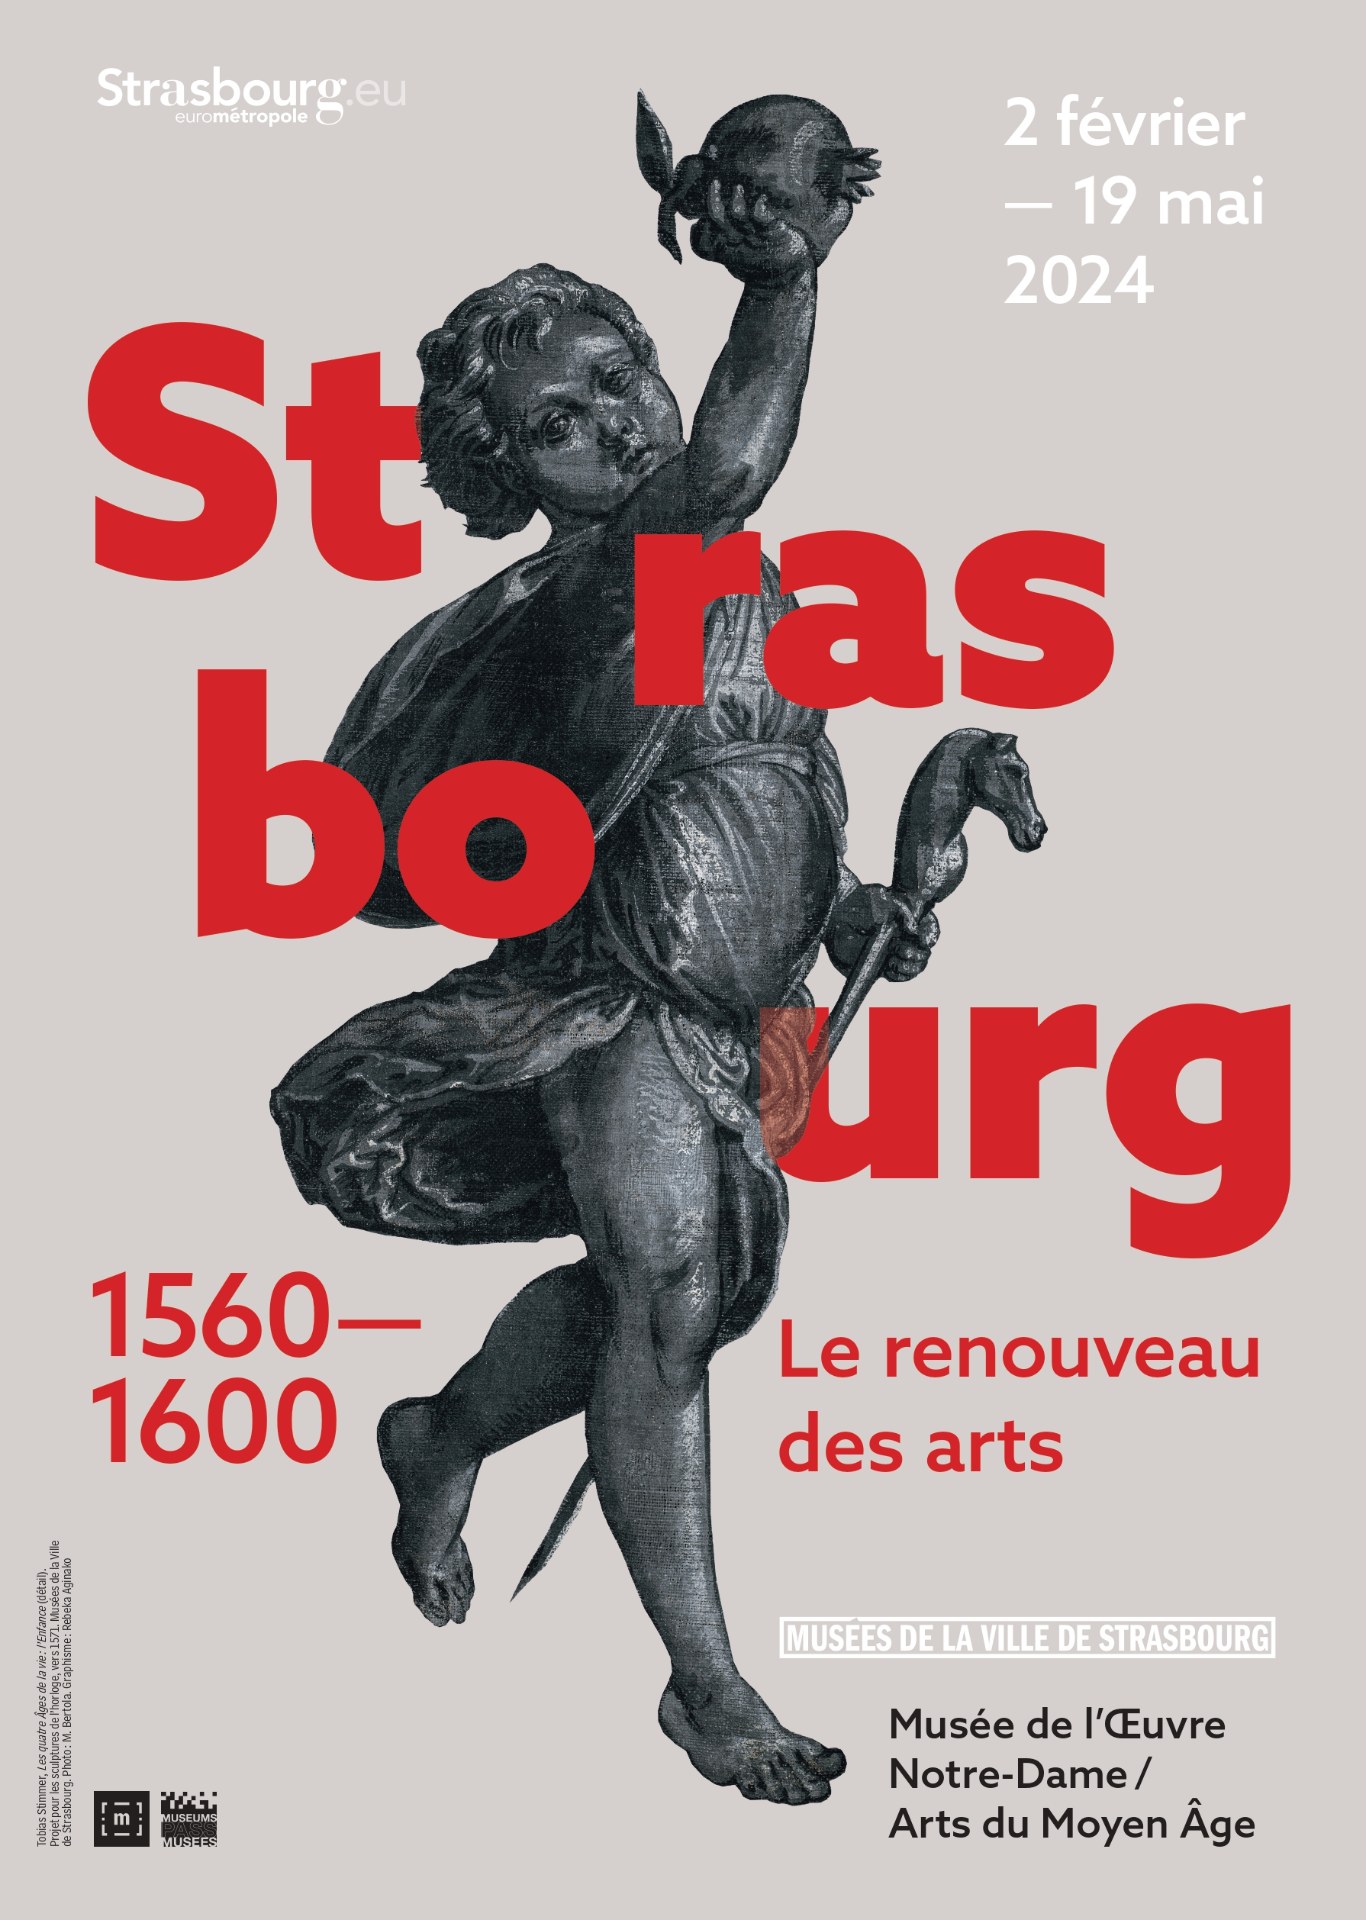 Strasbourg 1560-1600. Le renouveau des arts Du 2 fév au 19 mai 2024